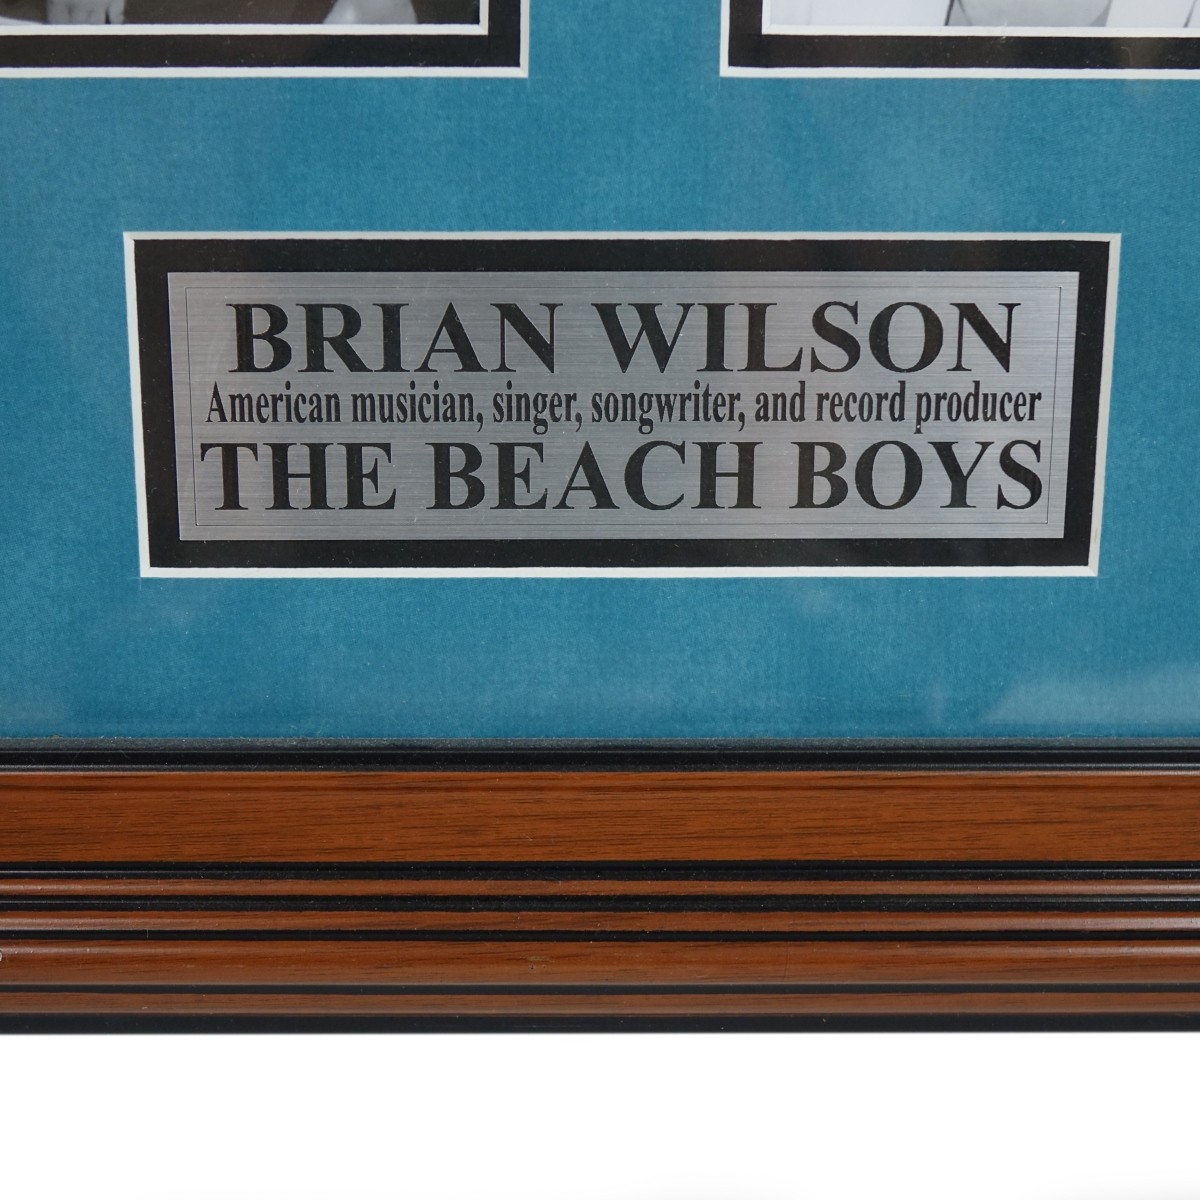 Brian Wilson "The Beach Boys" Signed Photograph